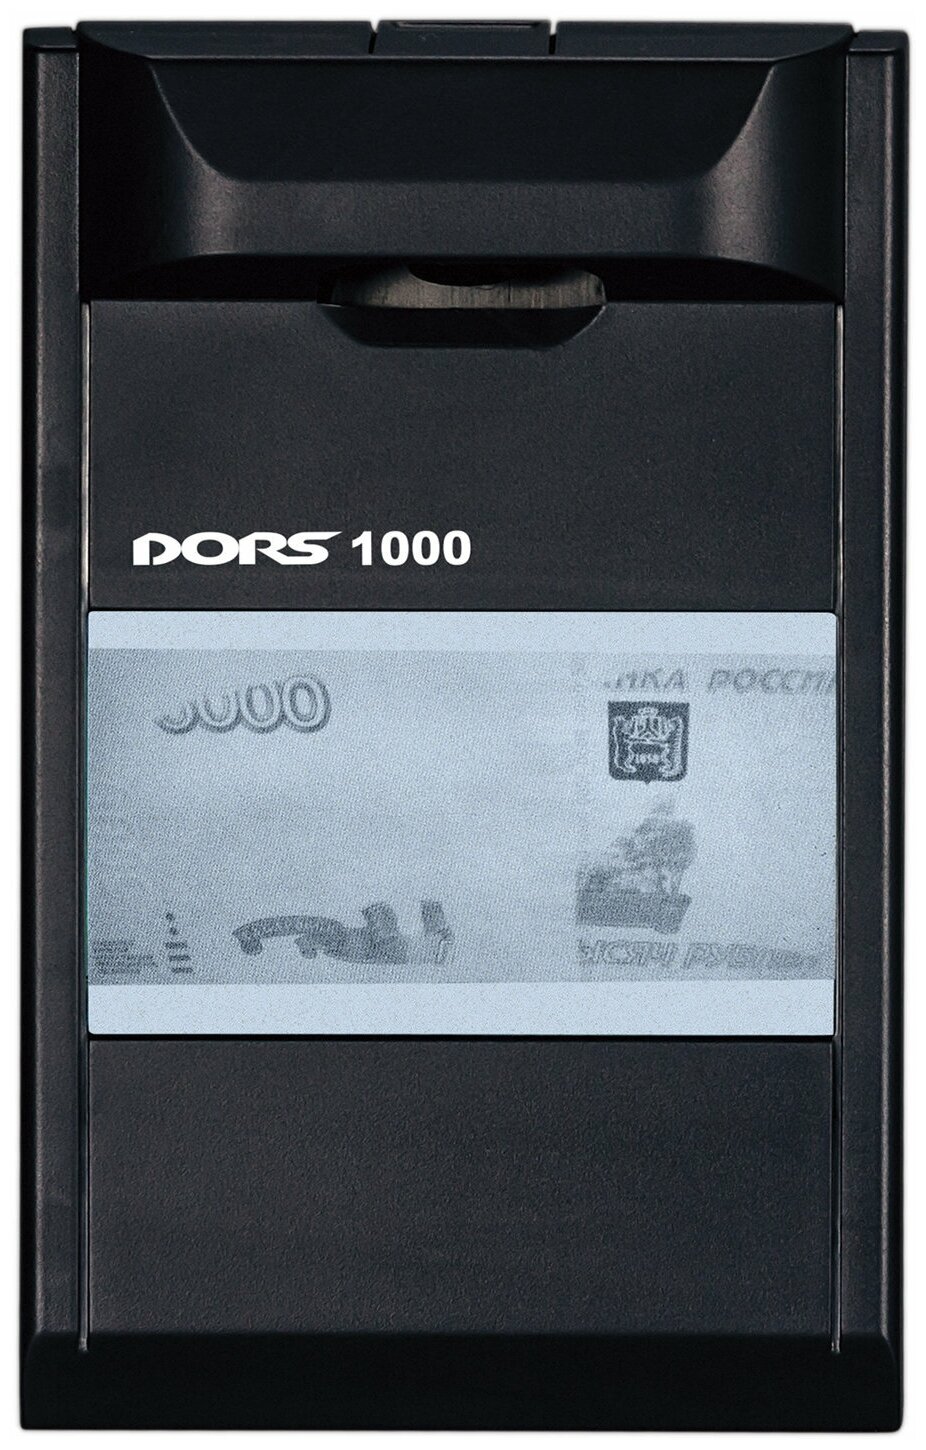 Детектор банкнот Dors 1000M3 просмотровый мультивалюта - фото №3